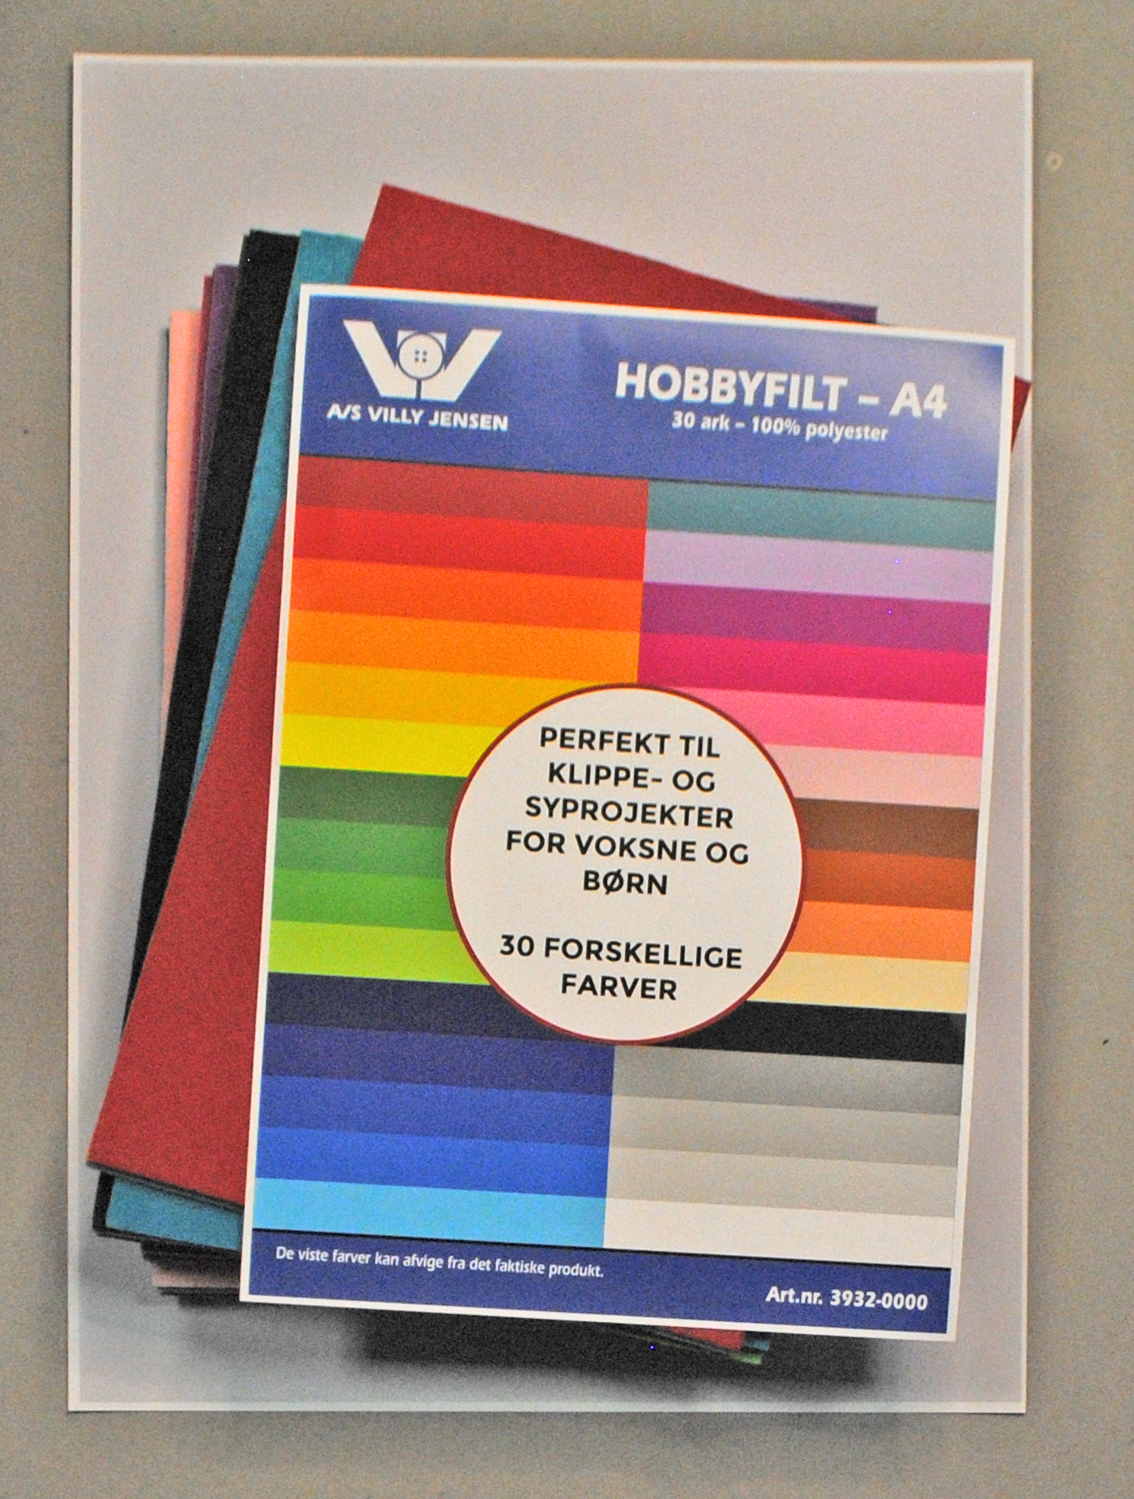 5: Hobbyfilt - A4 30 Ark Forskellige Farver 3932-0000